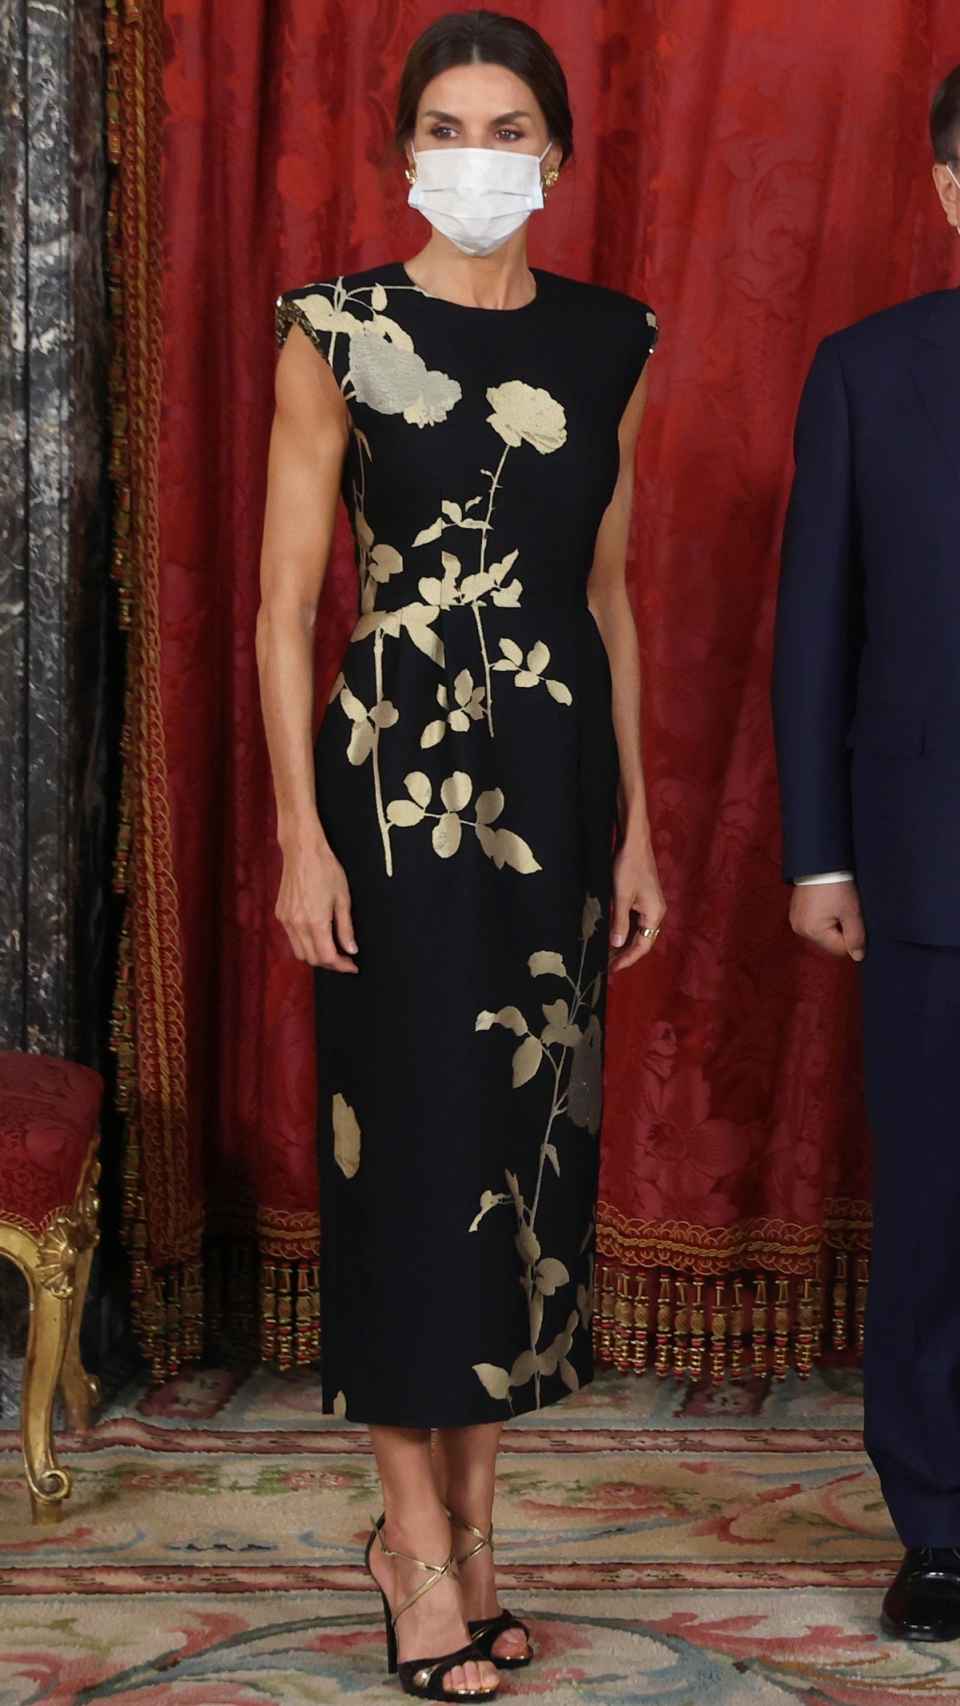 El 'outfit' de la Reina para su cena de Estado en palacio.